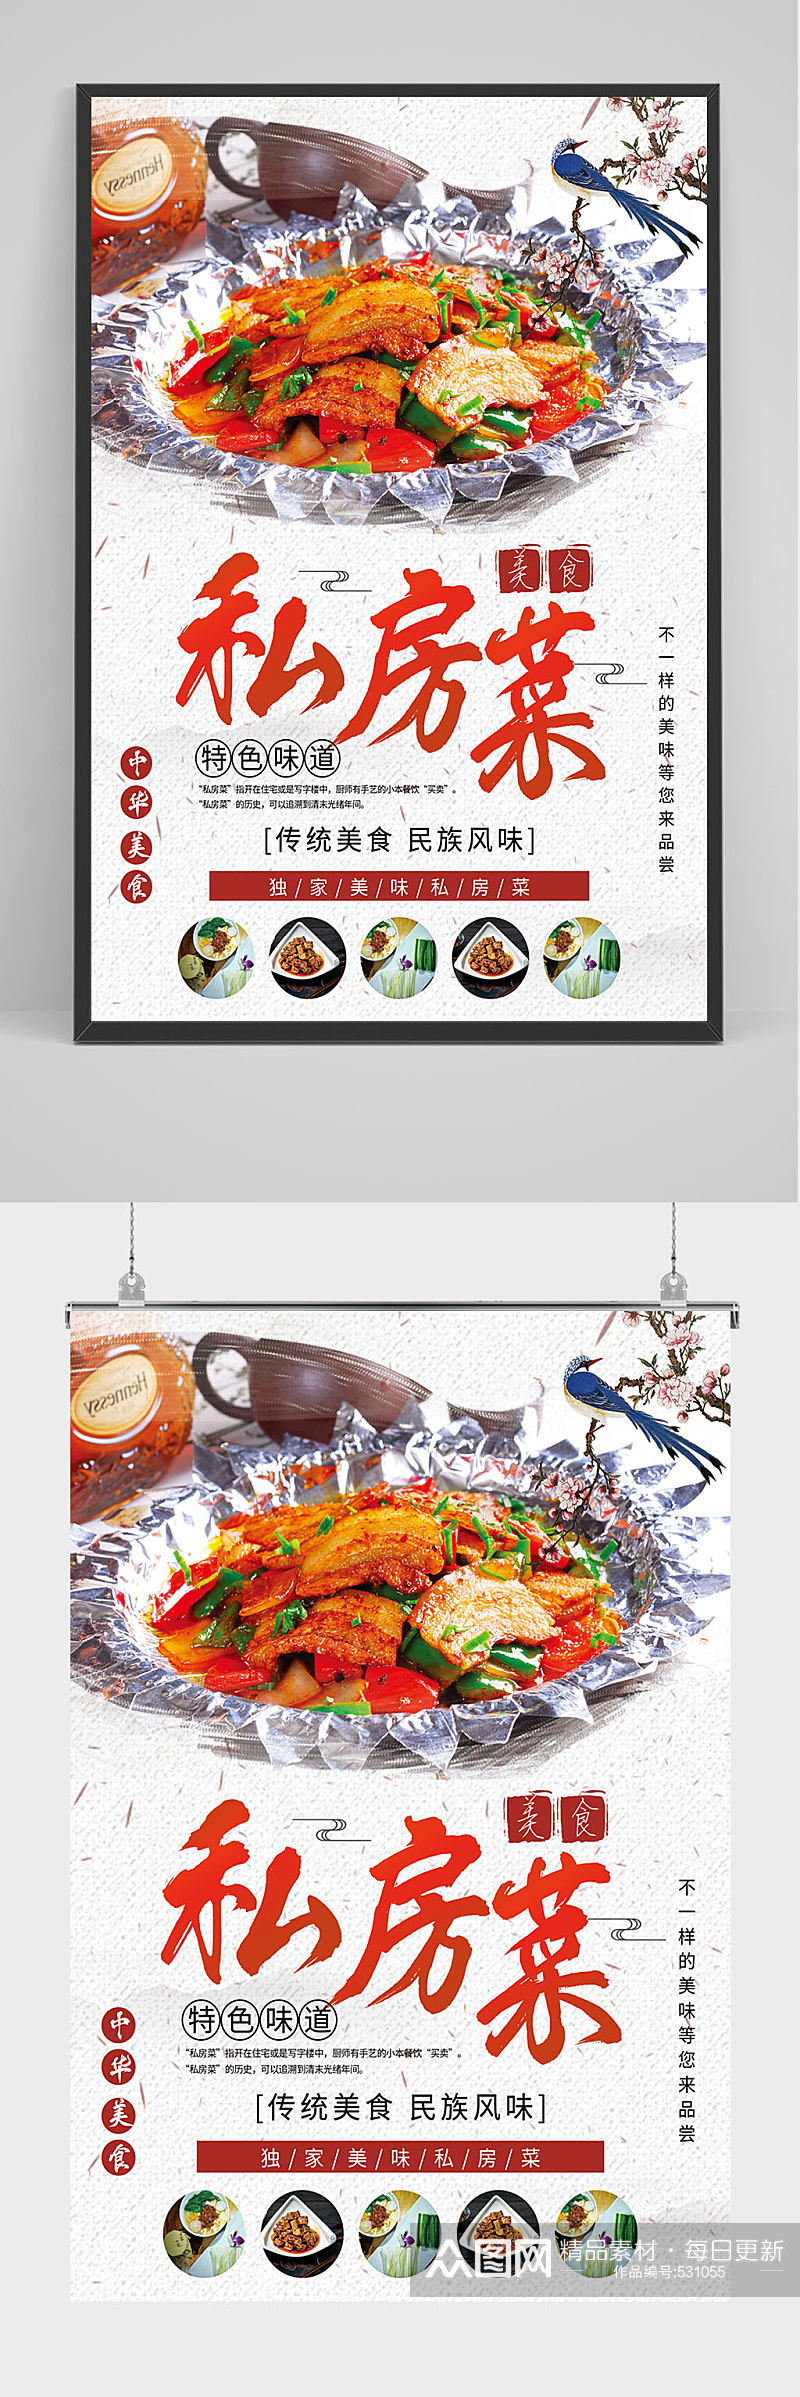 中国风私房菜海报设计素材